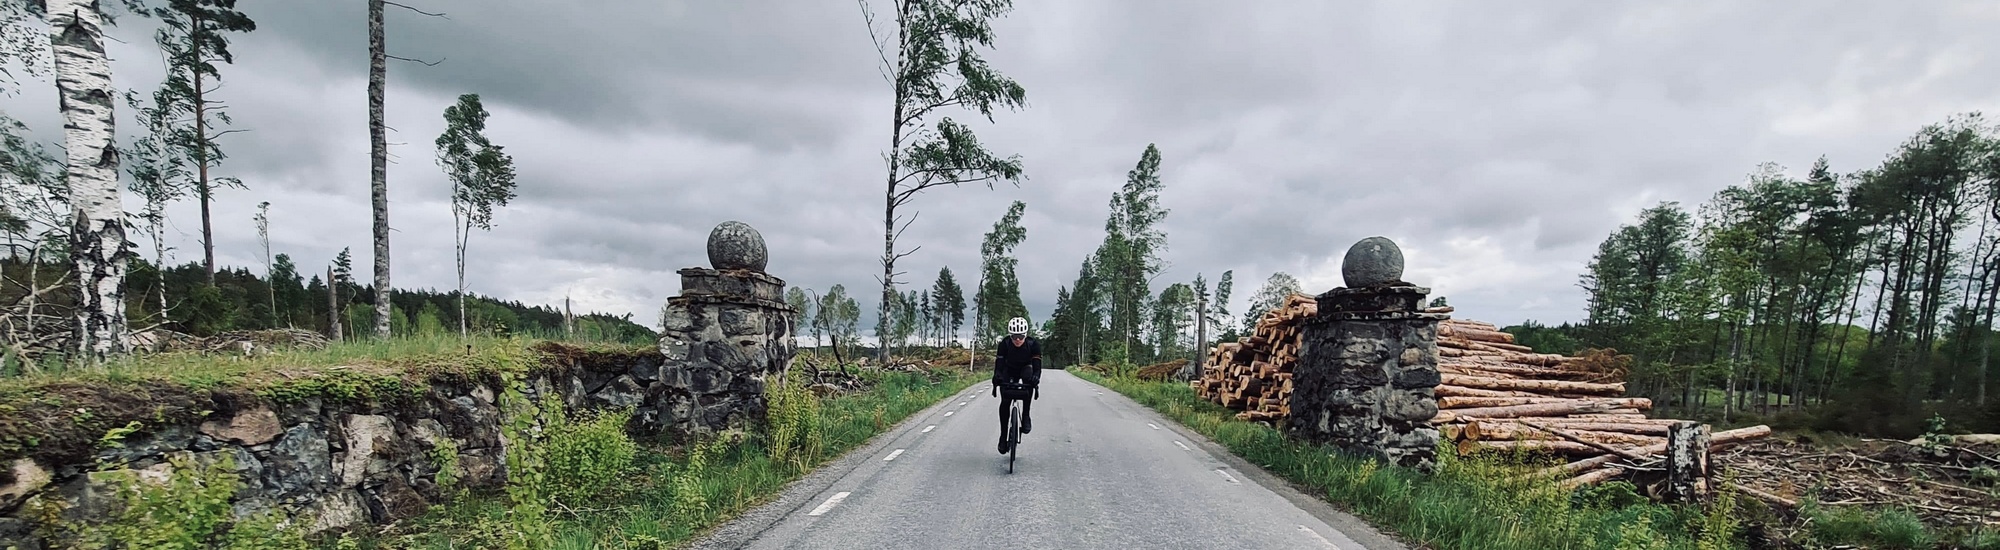 600 kilometrov švédskymi lesmi - nezabudnuteľné ultrapreteky